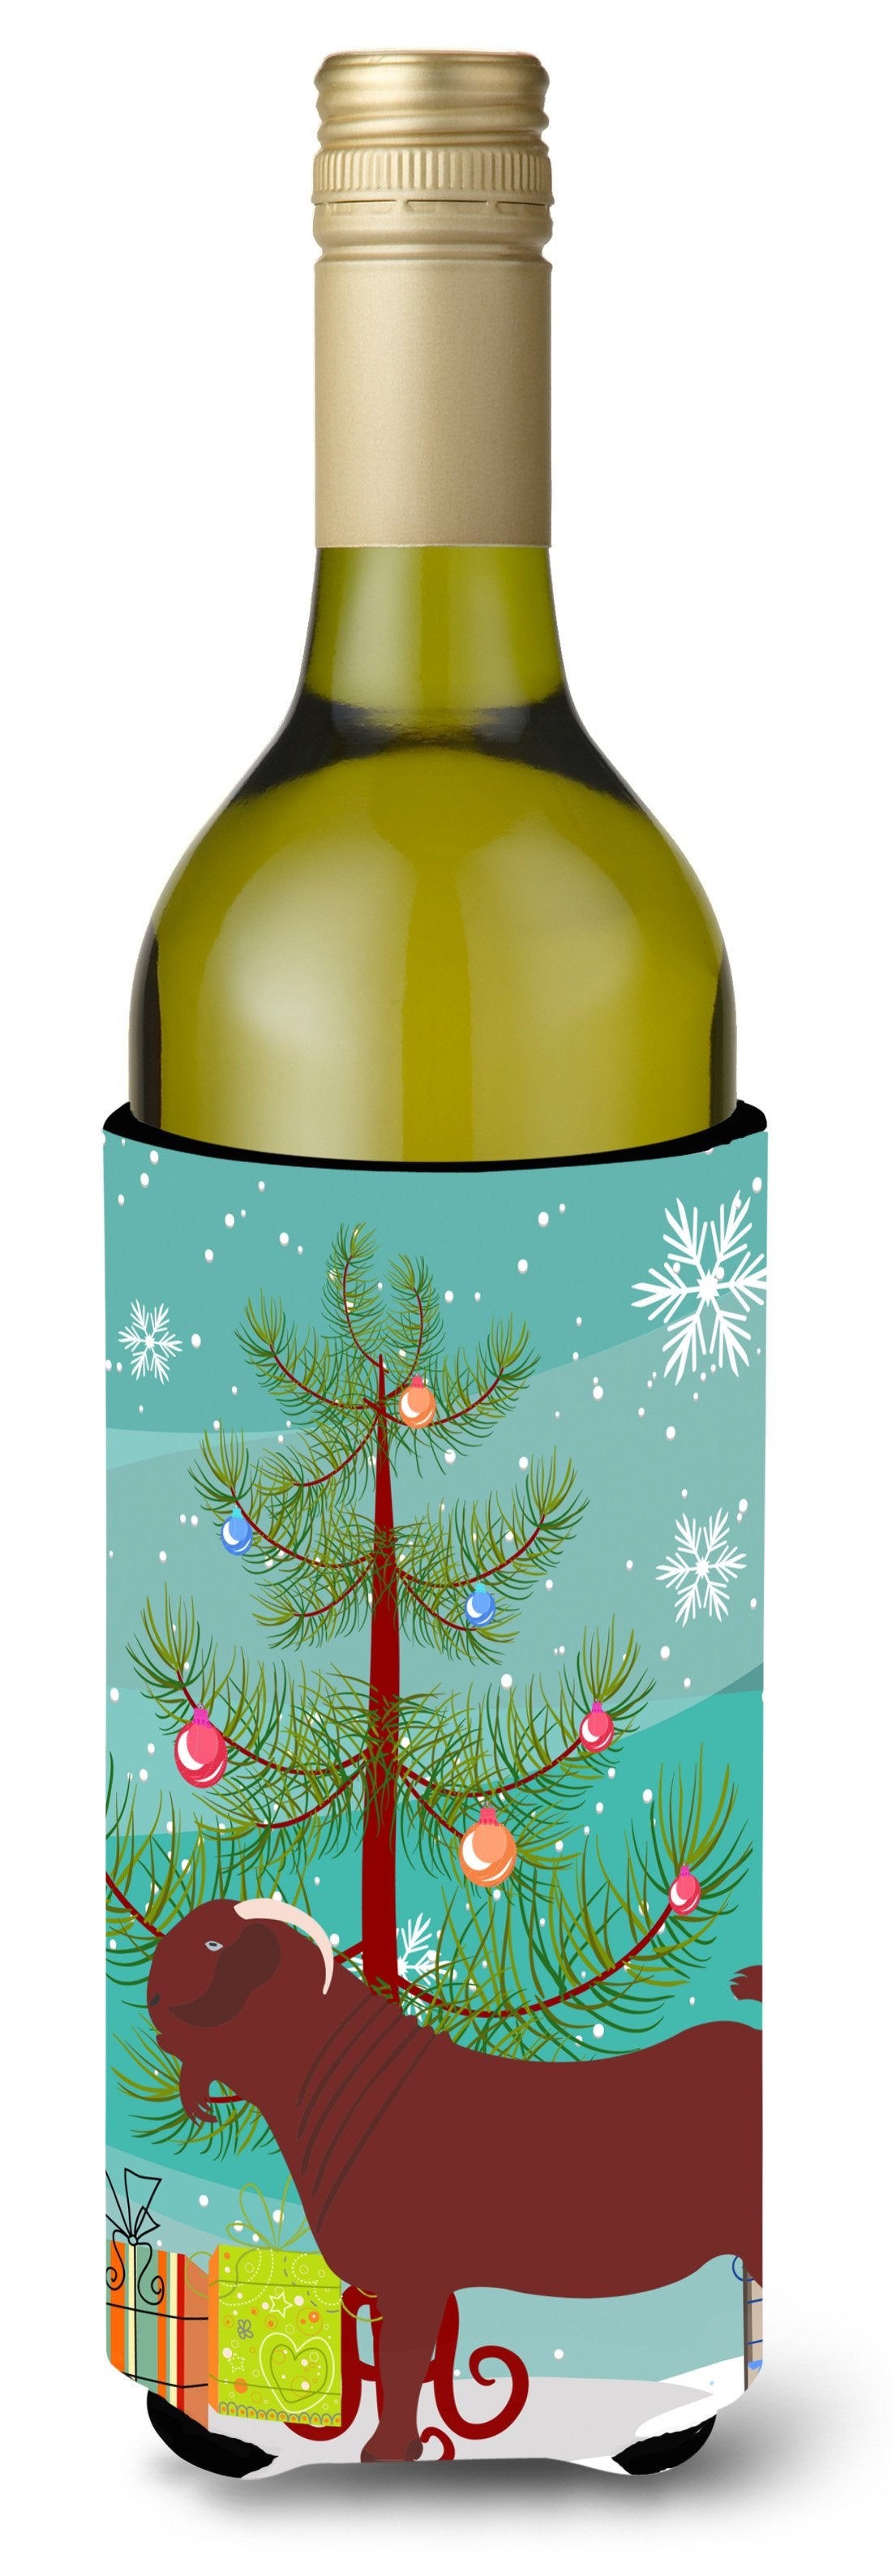 Kalahari Red Goat Christmas Wine Bottle Beverge Insulator Hugger BB9258LITERK by Caroline's Treasures